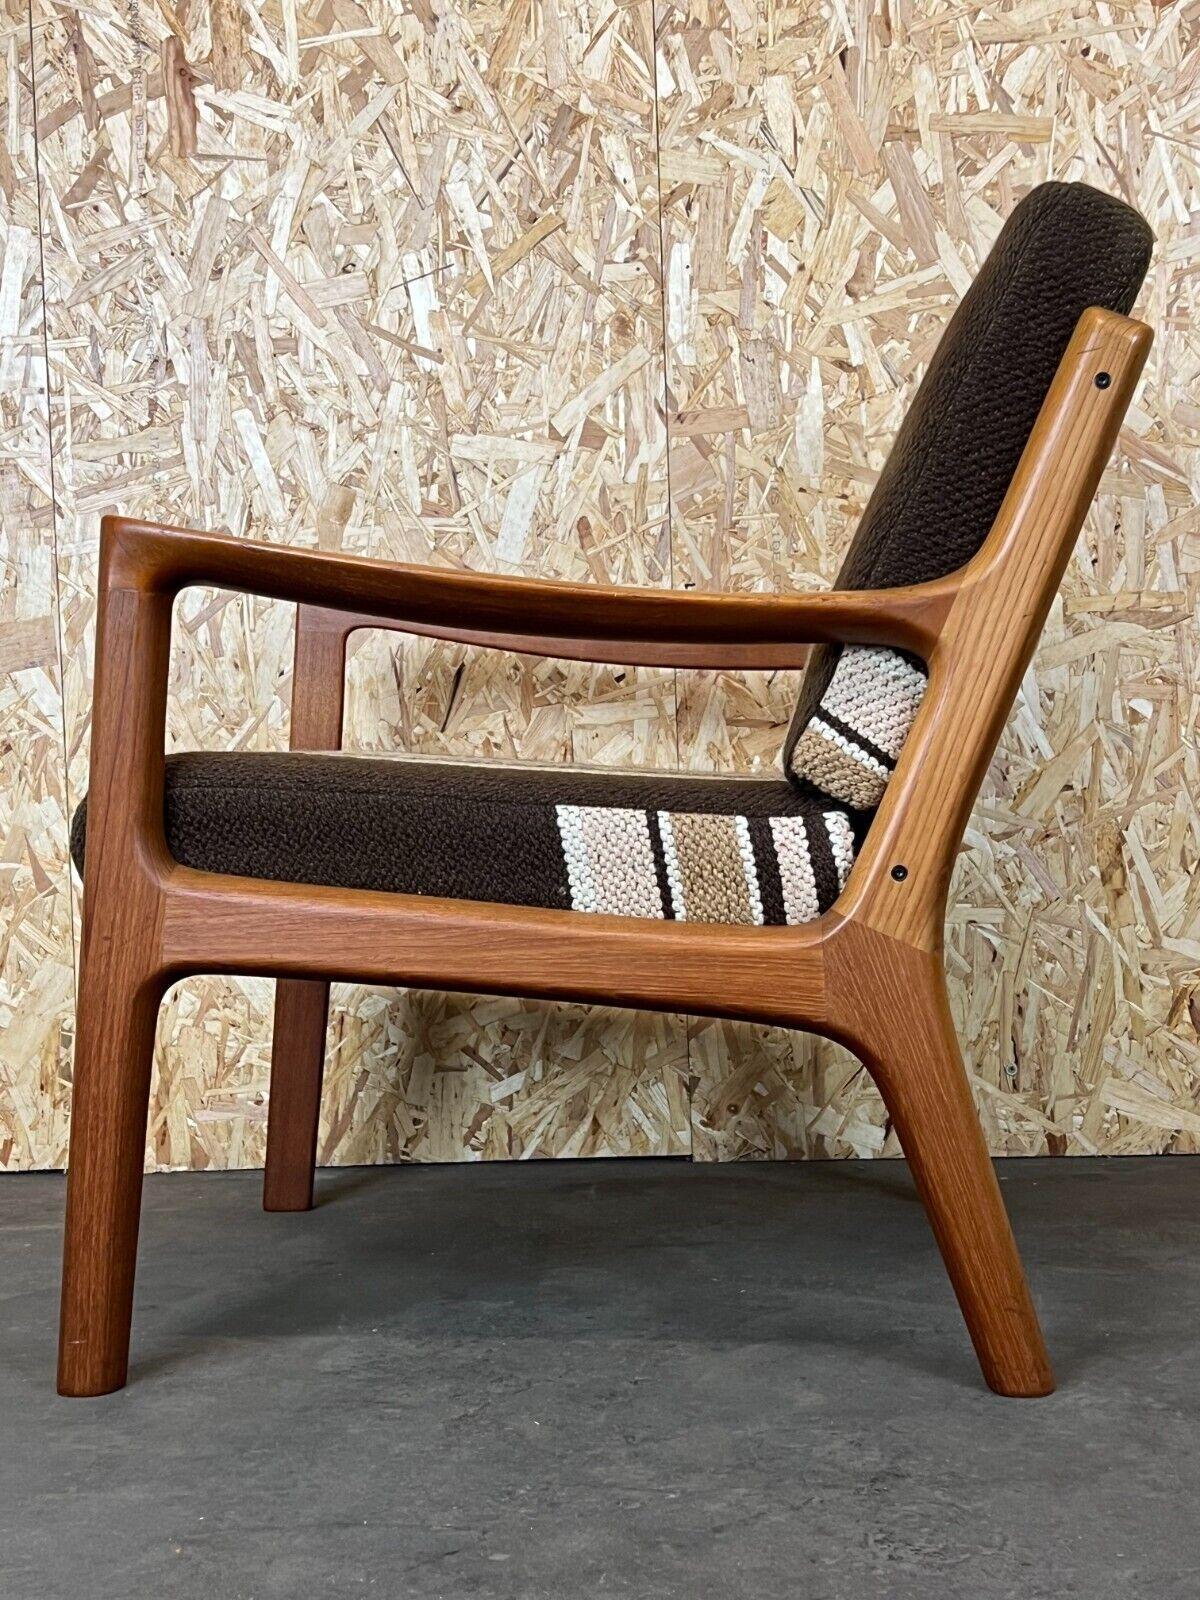 1960s-1970s Teak Easy Chair Ole Wanscher Cado France & Son Denmark For Sale 11